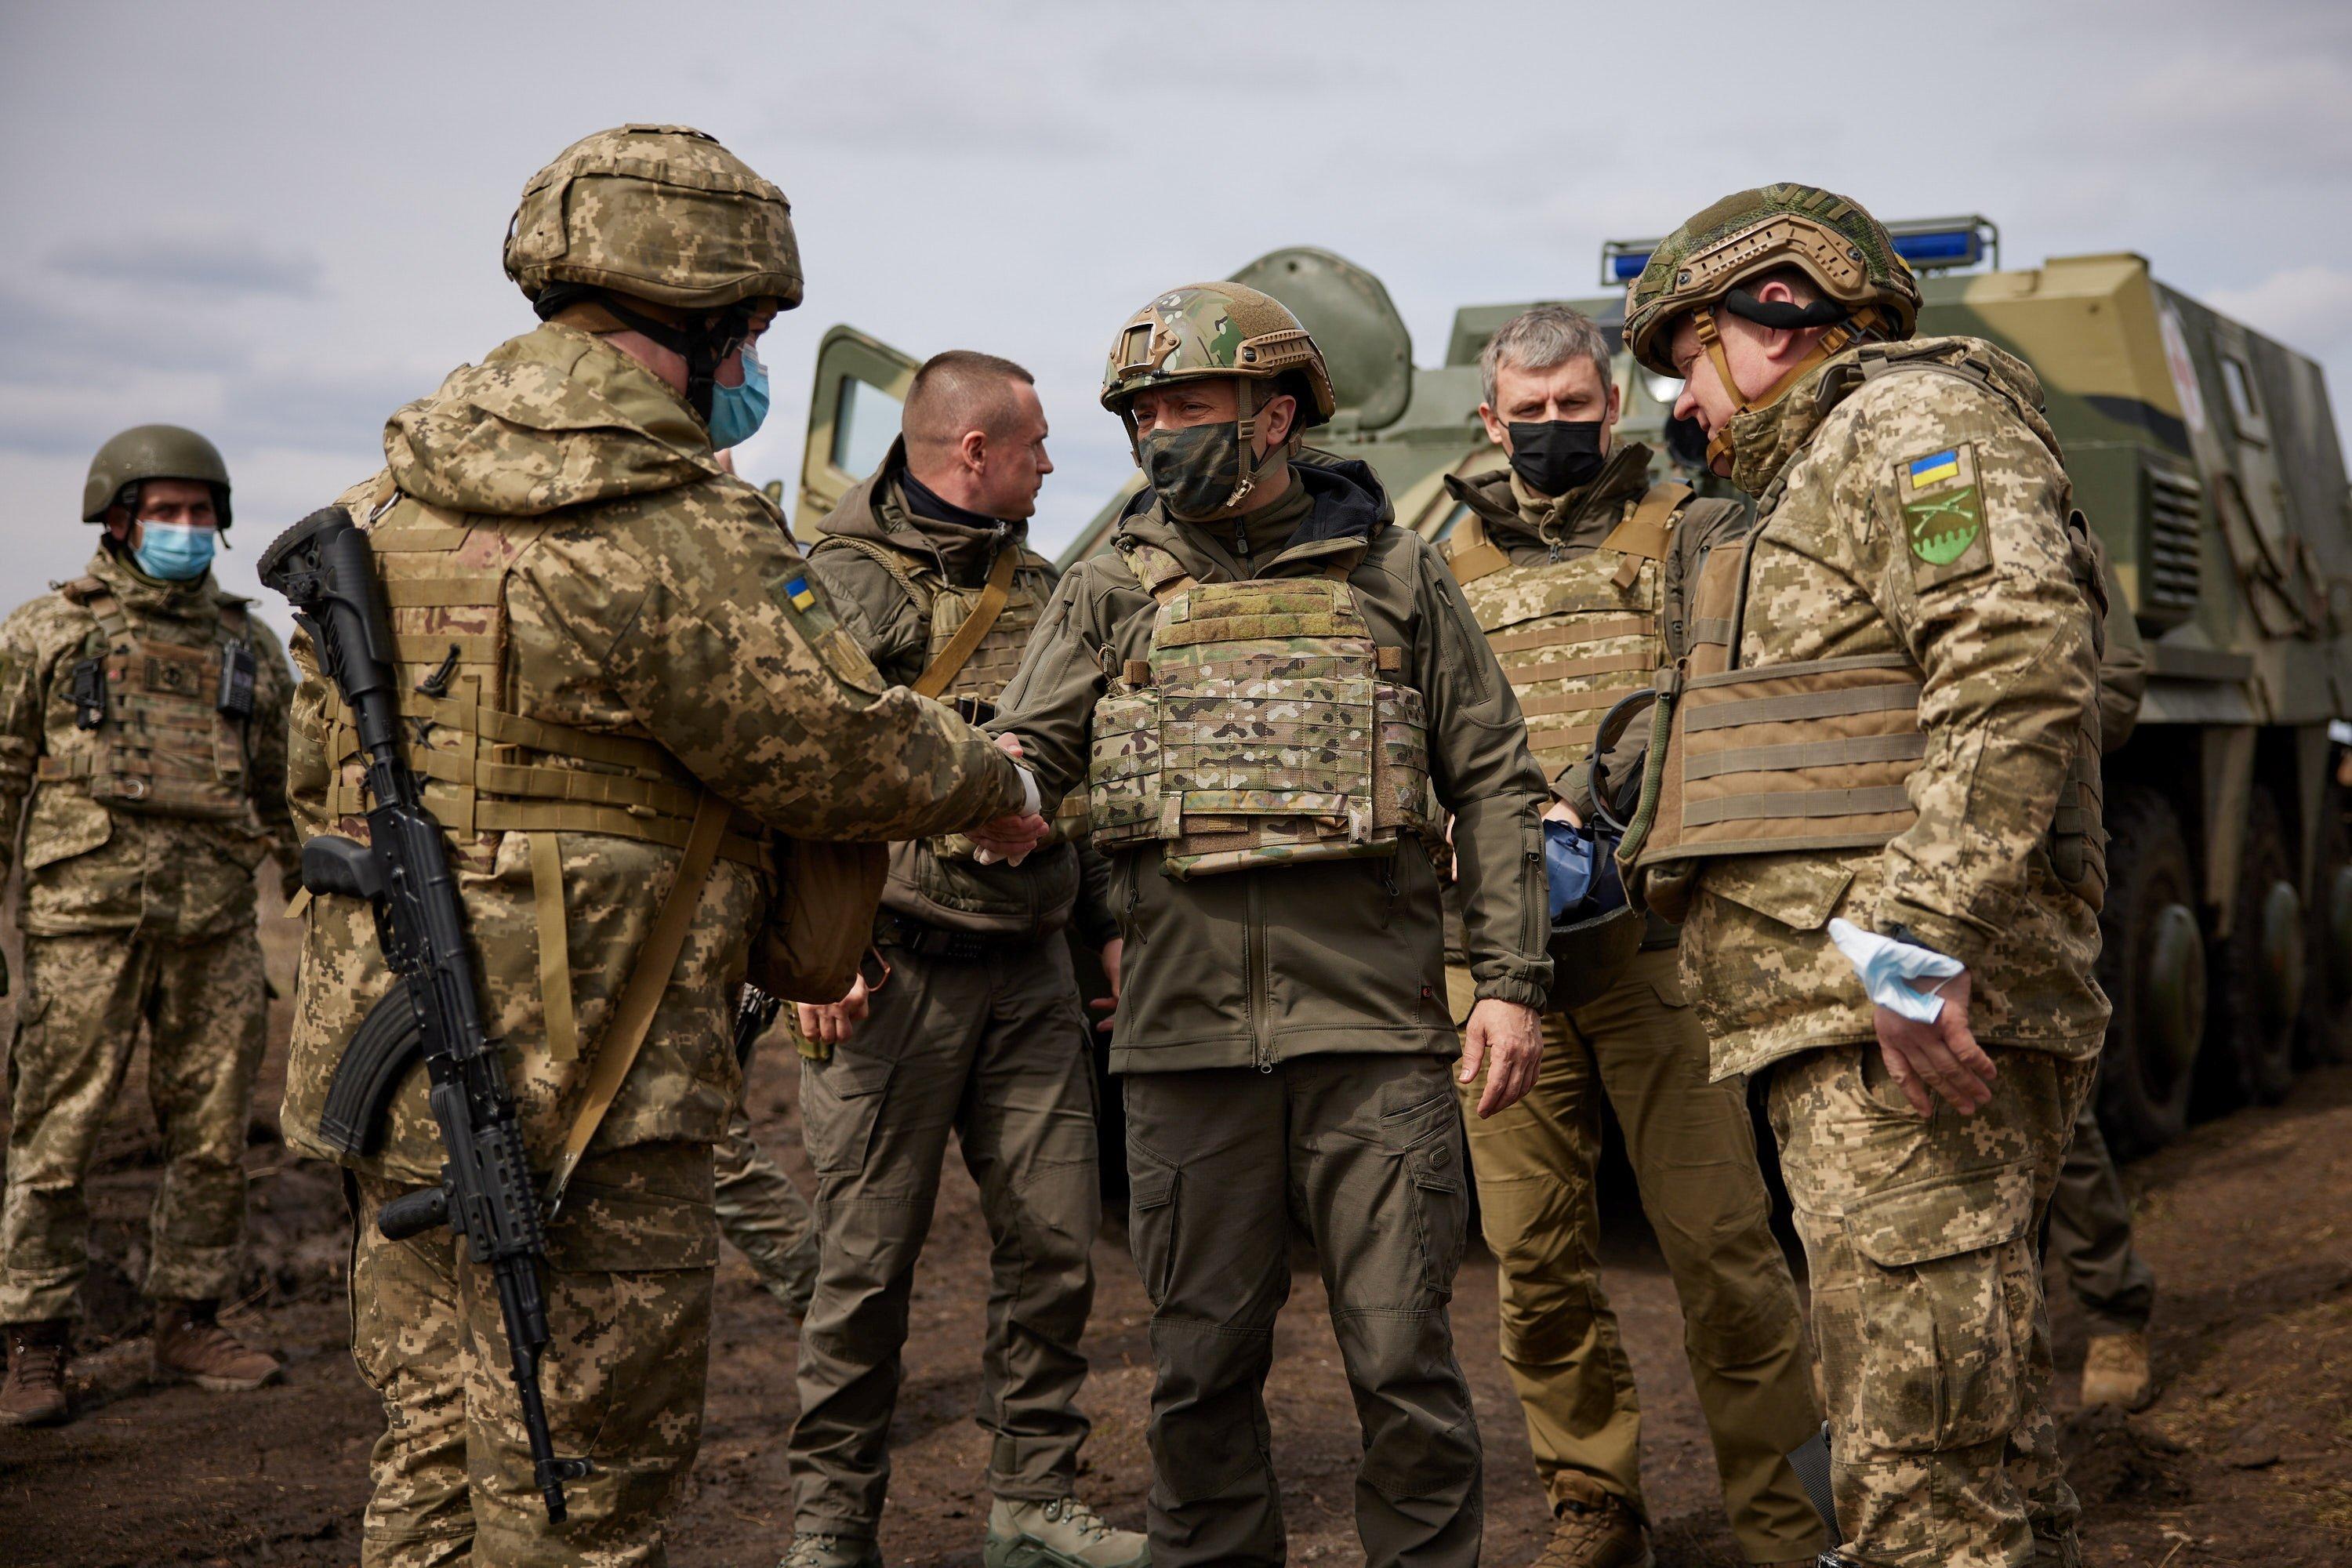 Velika Britanija će opskrbiti Ukrajinu novim paletom oružja - Avaz